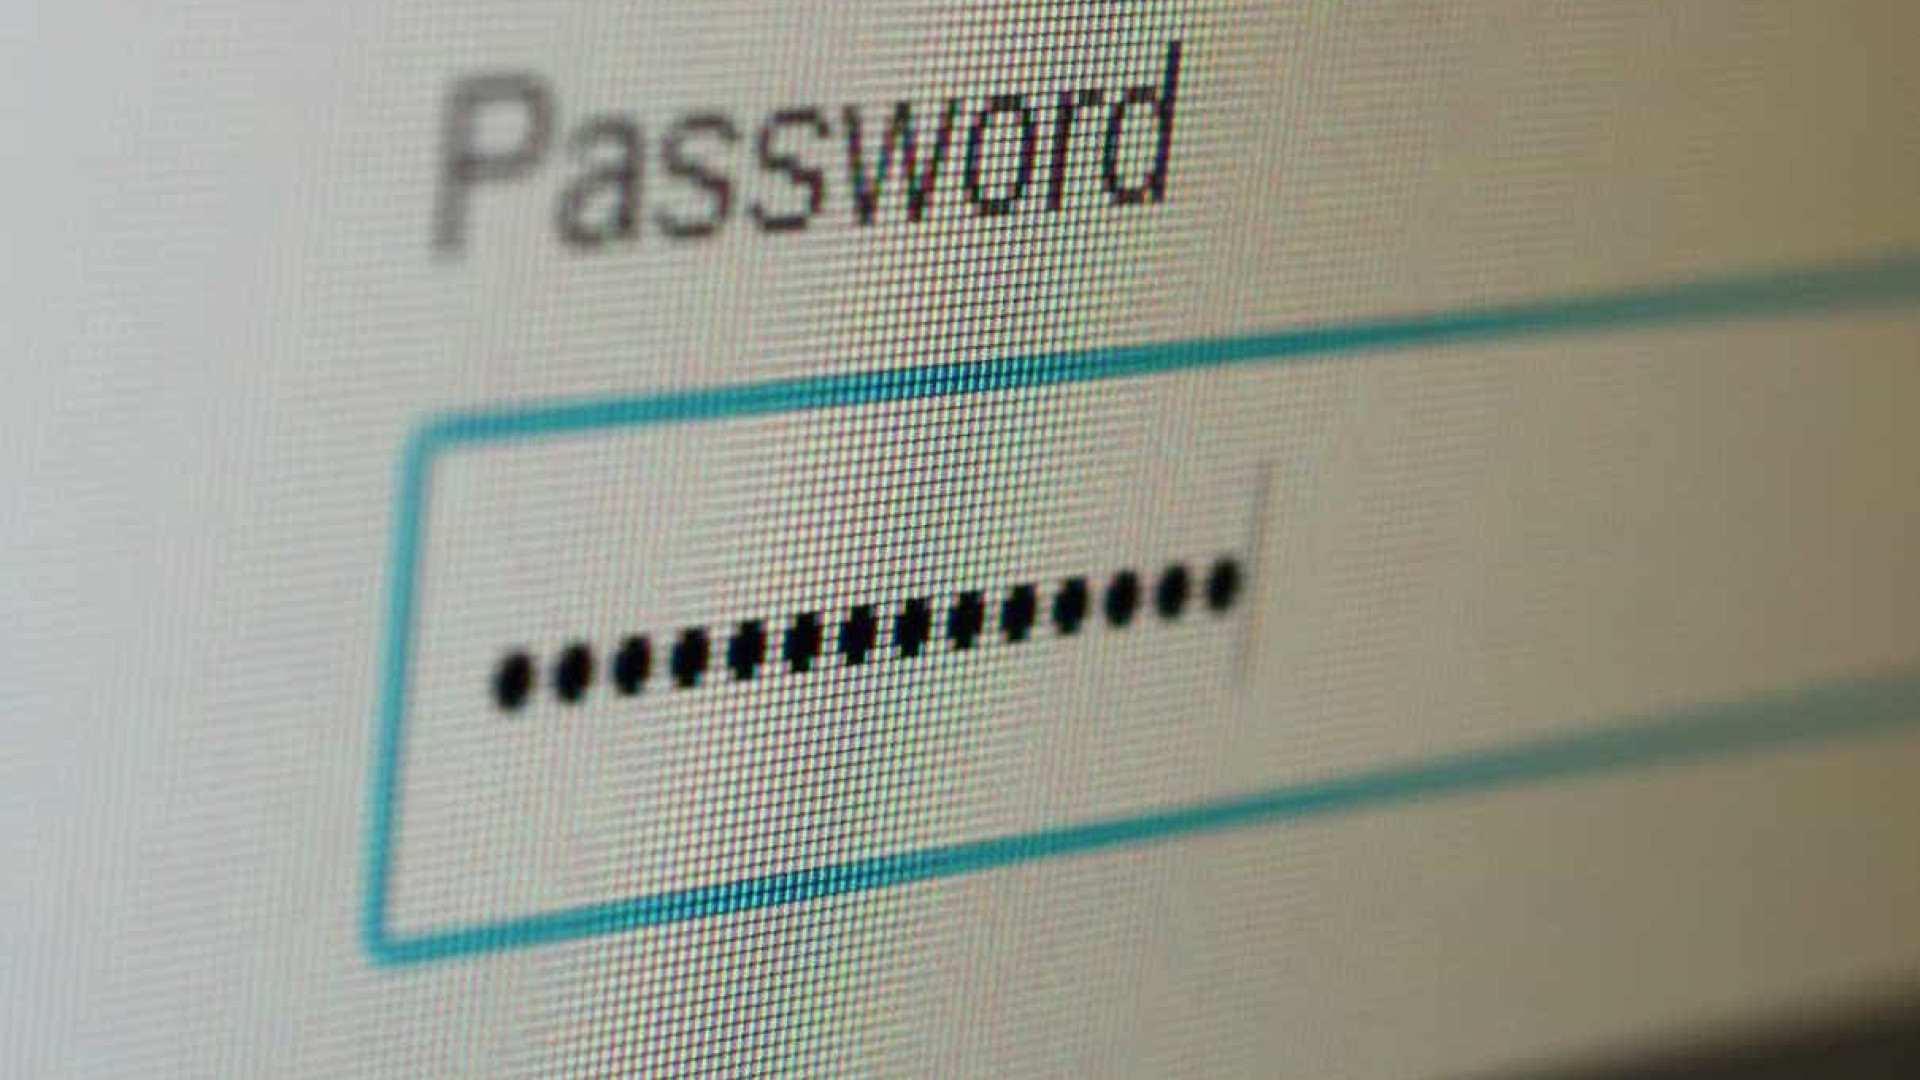 Quanto tempo demora para ‘hackear’ uma password? Veja se a sua é segura